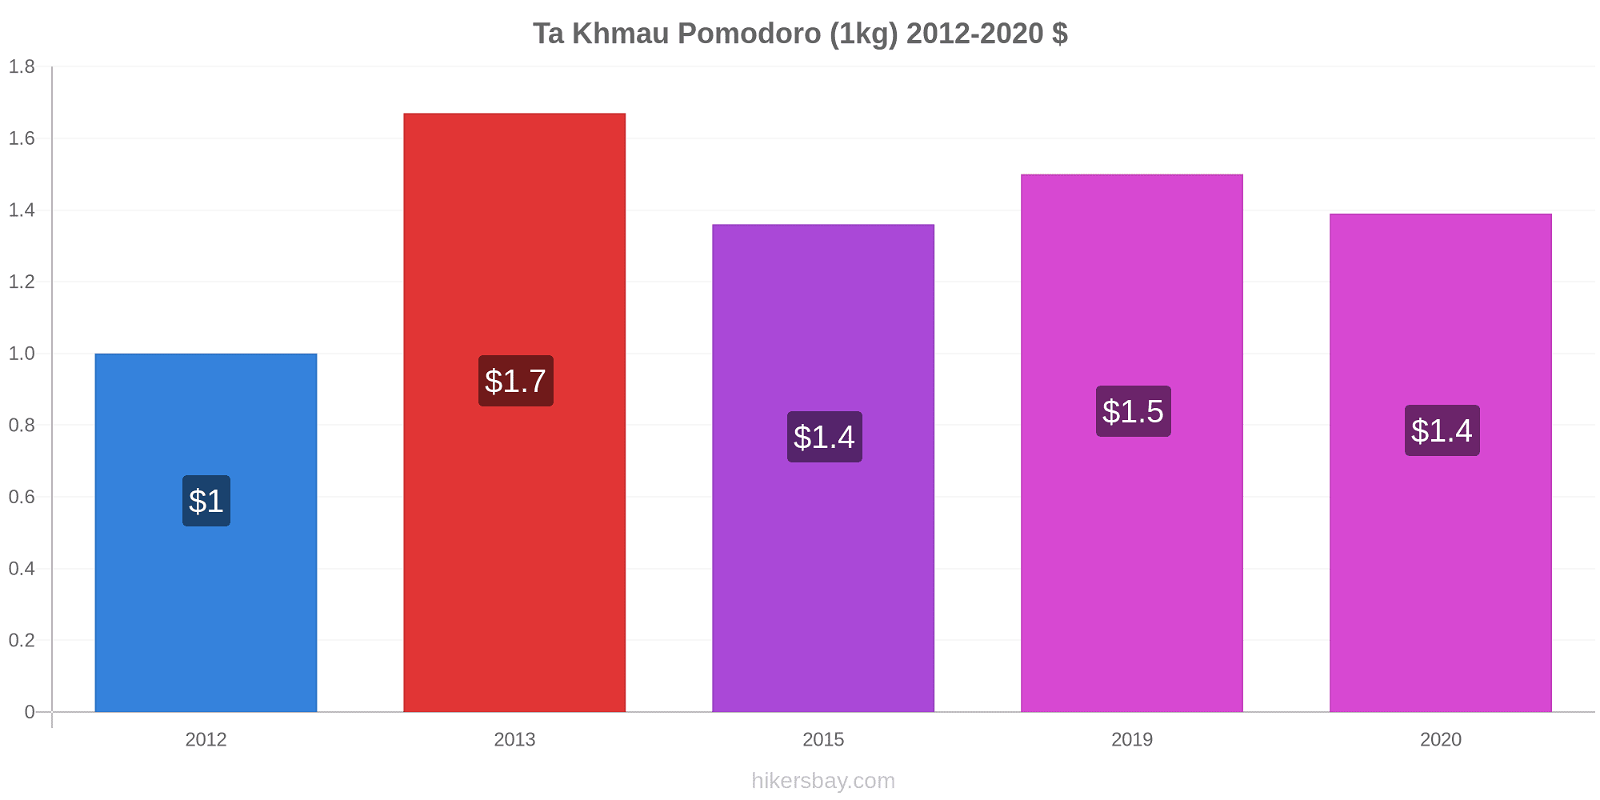 Ta Khmau variazioni di prezzo Pomodoro (1kg) hikersbay.com